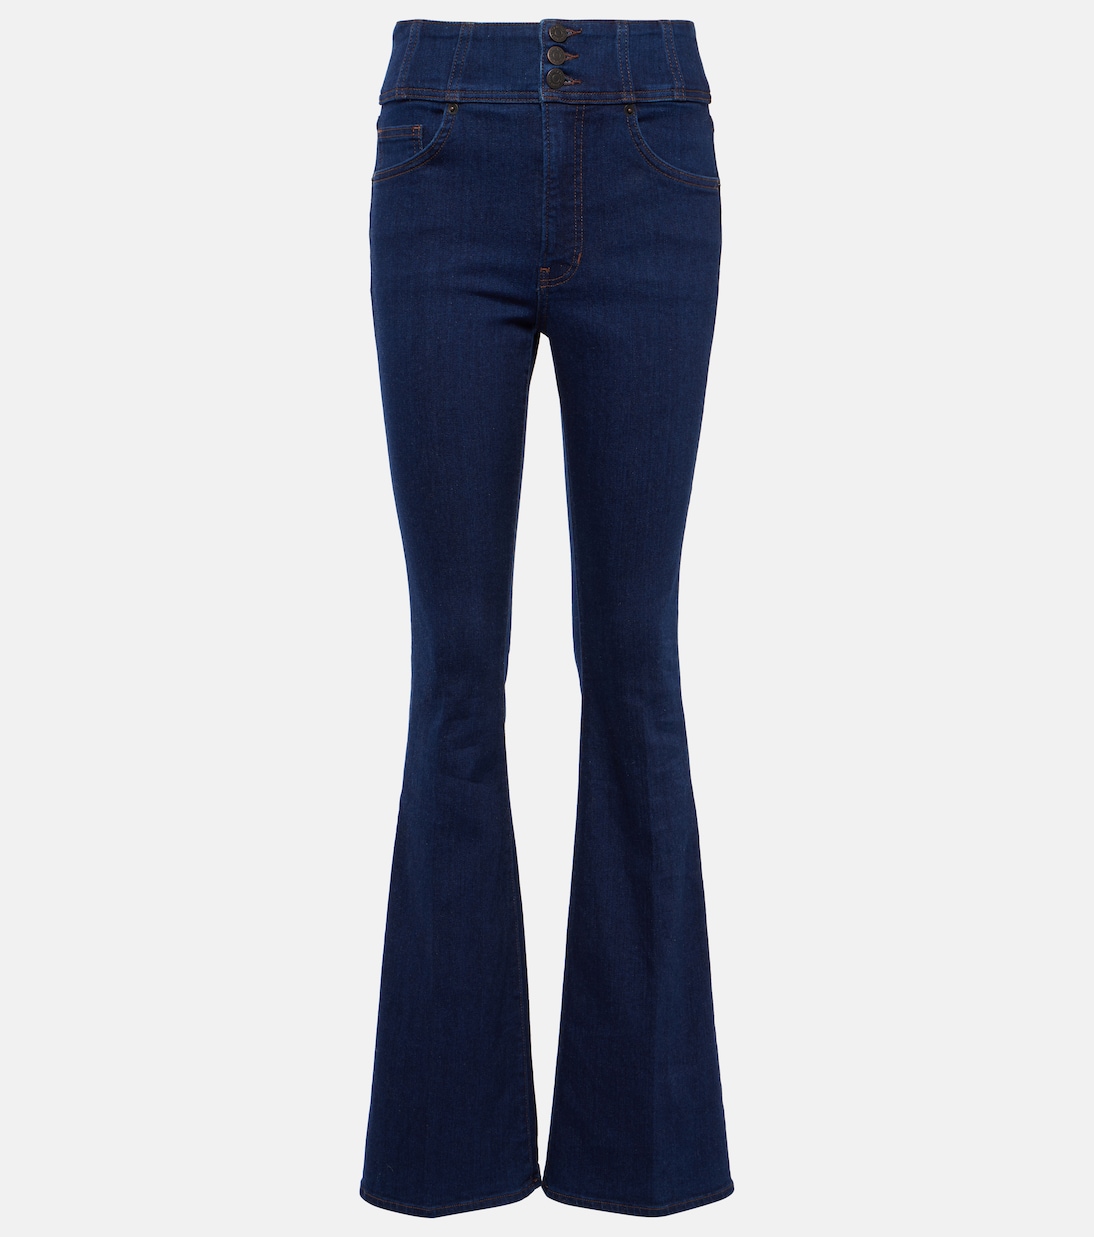 Расклешенные джинсы beverly с высокой посадкой Veronica Beard, синий расклешенные джинсы carly со средней посадкой veronica beard цвет sierra blue